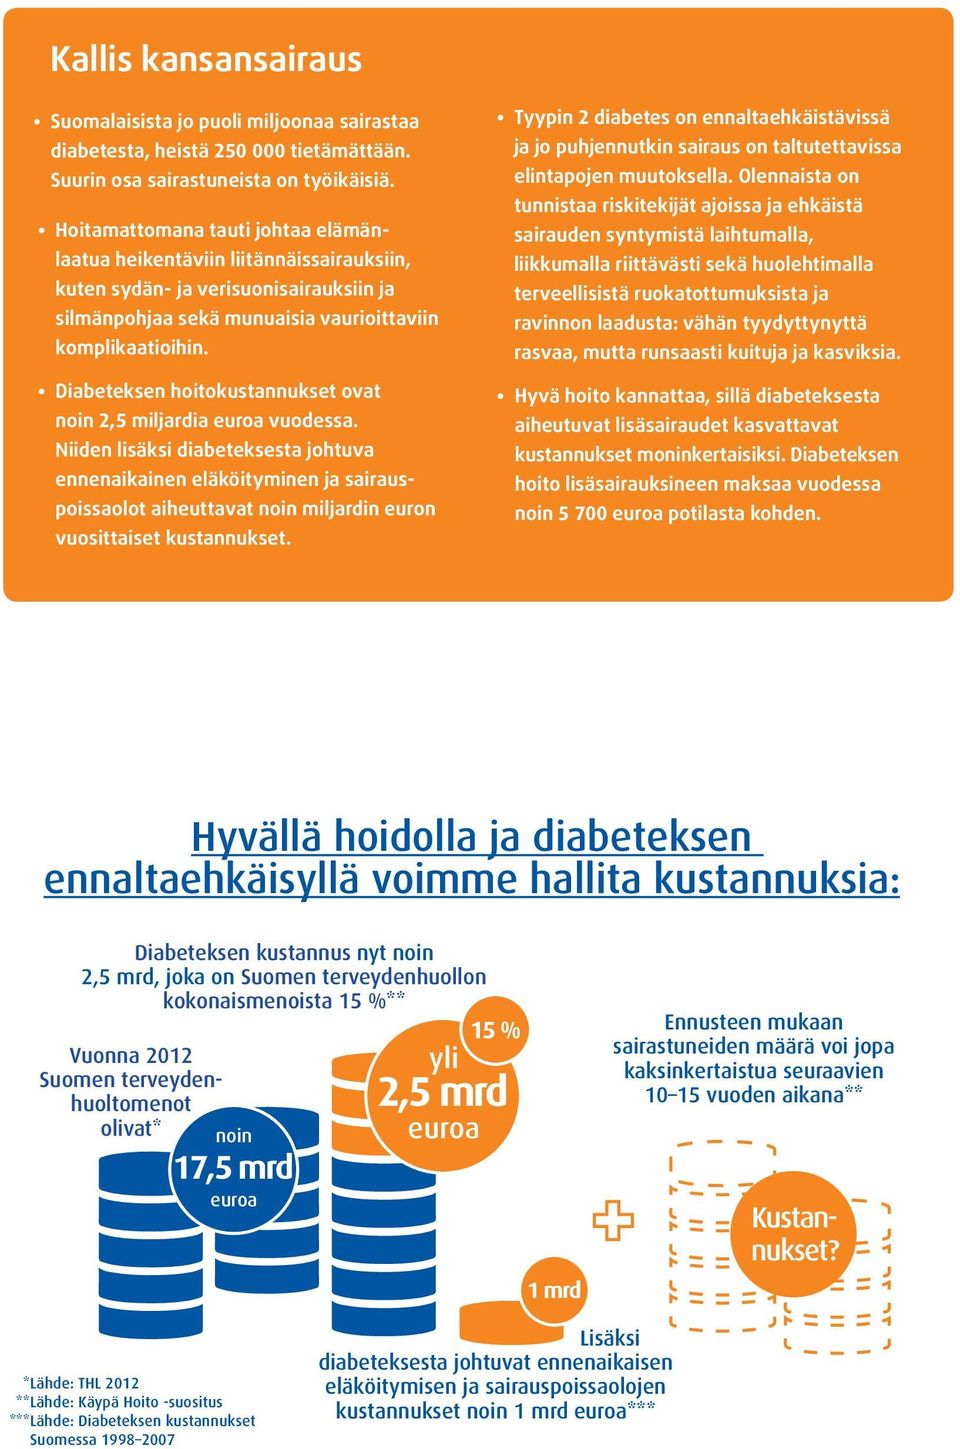 Diabeteksen hoitokustannukset ovat noin 2,5 miljardia euroa vuodessa.